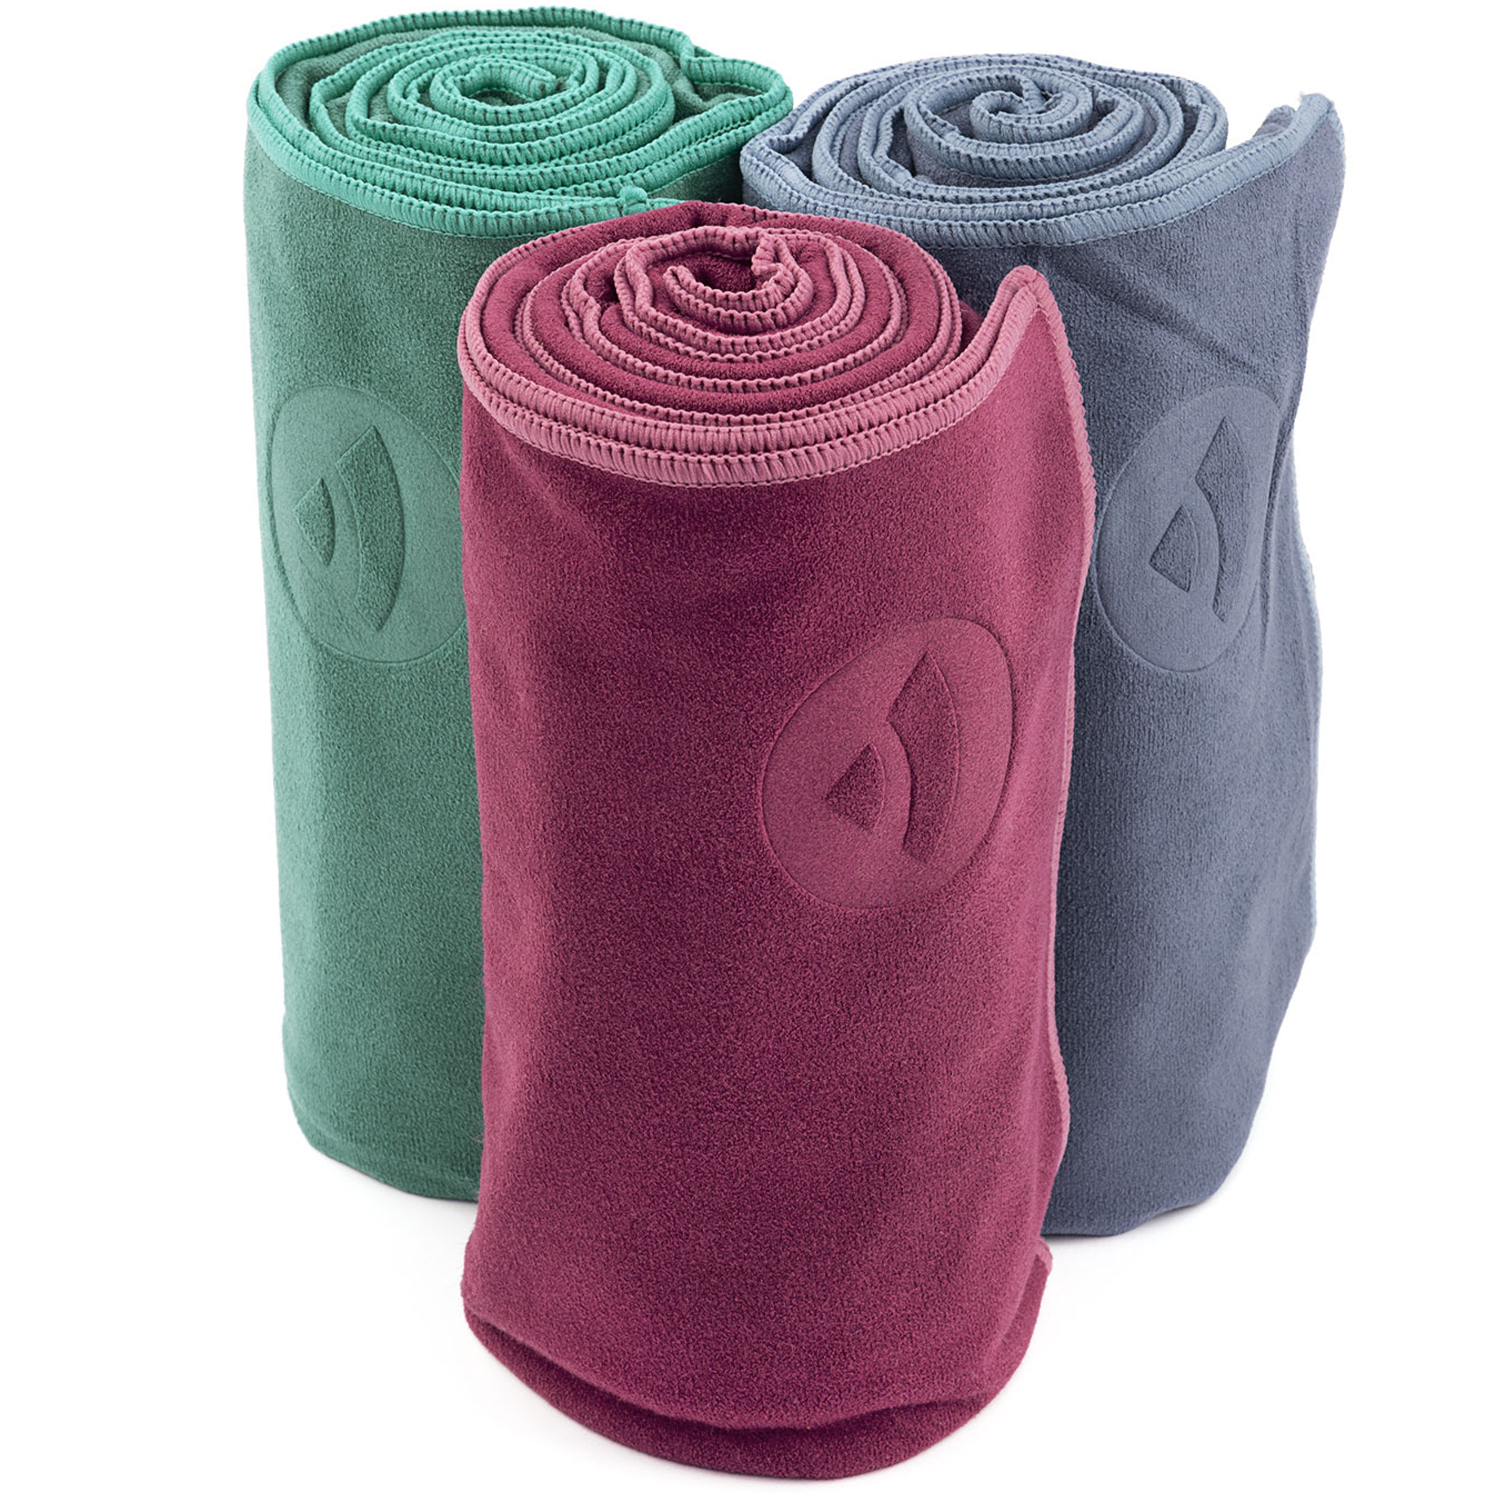 Yoga-Handtuch Microfaser Anti-Rutsch Unterseite Auflage Yogamatte 183 x 61 cm 